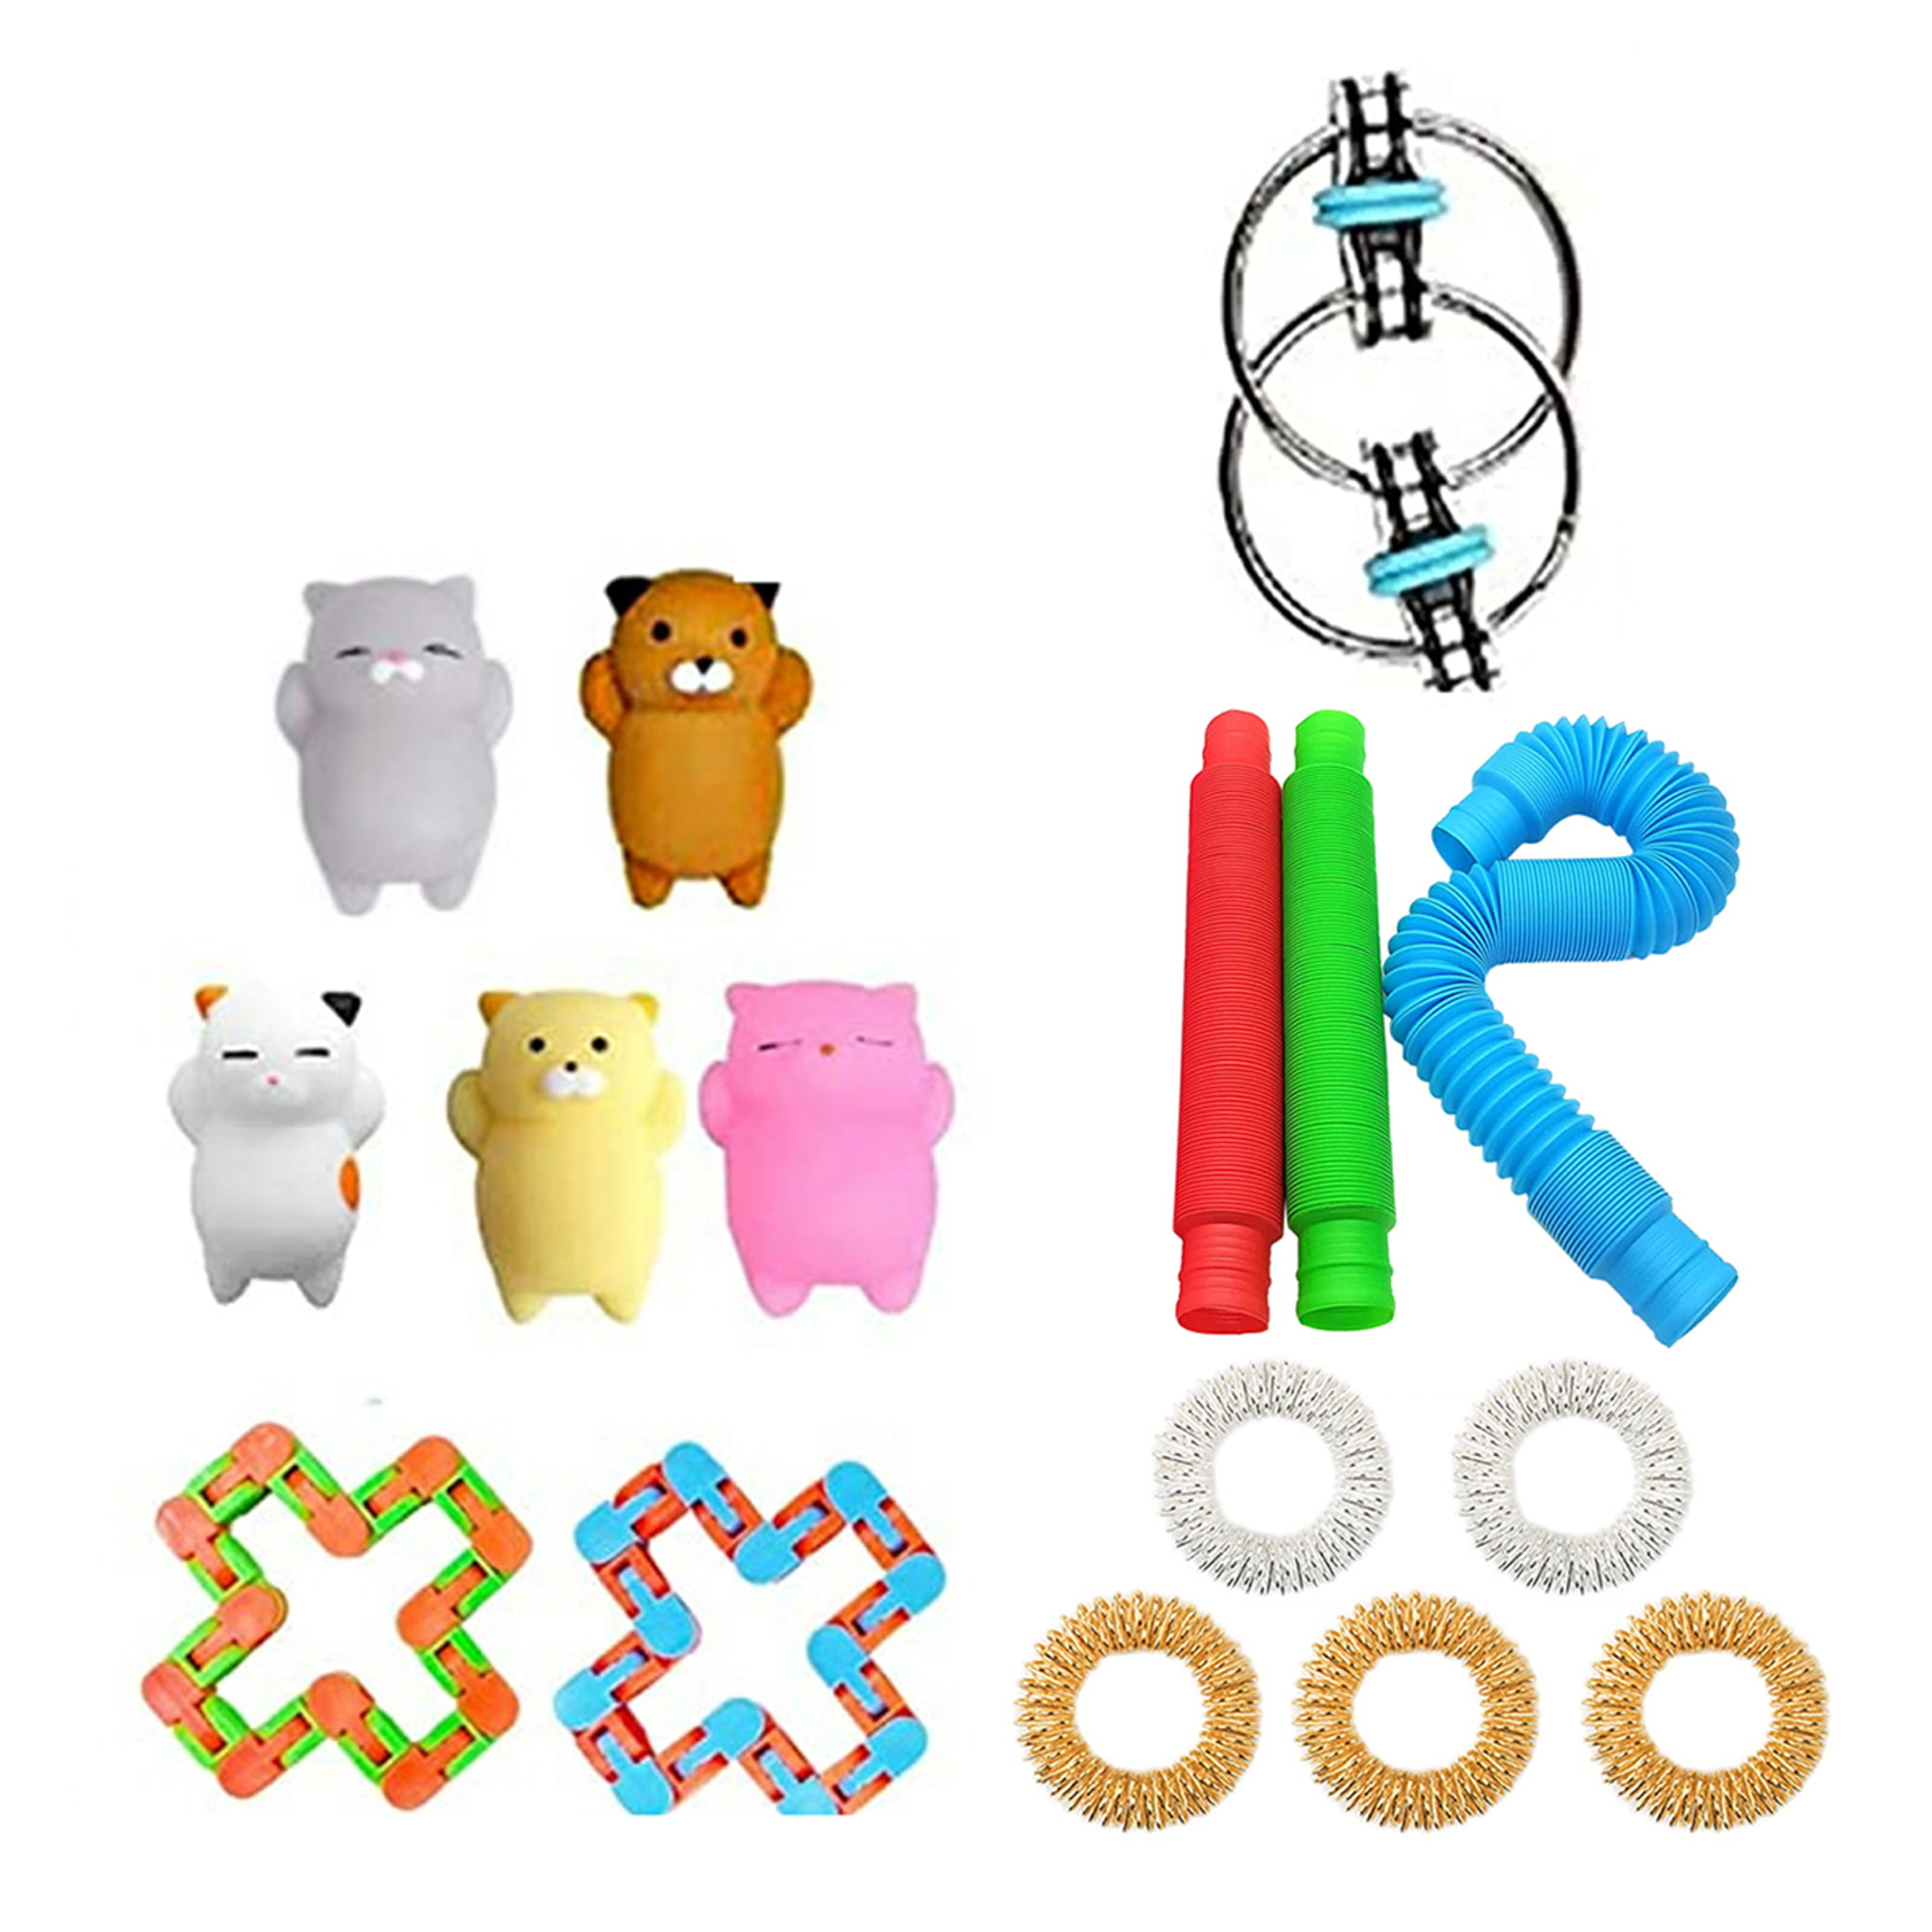 Details about   16PCS Fidget Toys Set Sensory Tools Bundle Stress Relief Hand Toys Kids Adults 